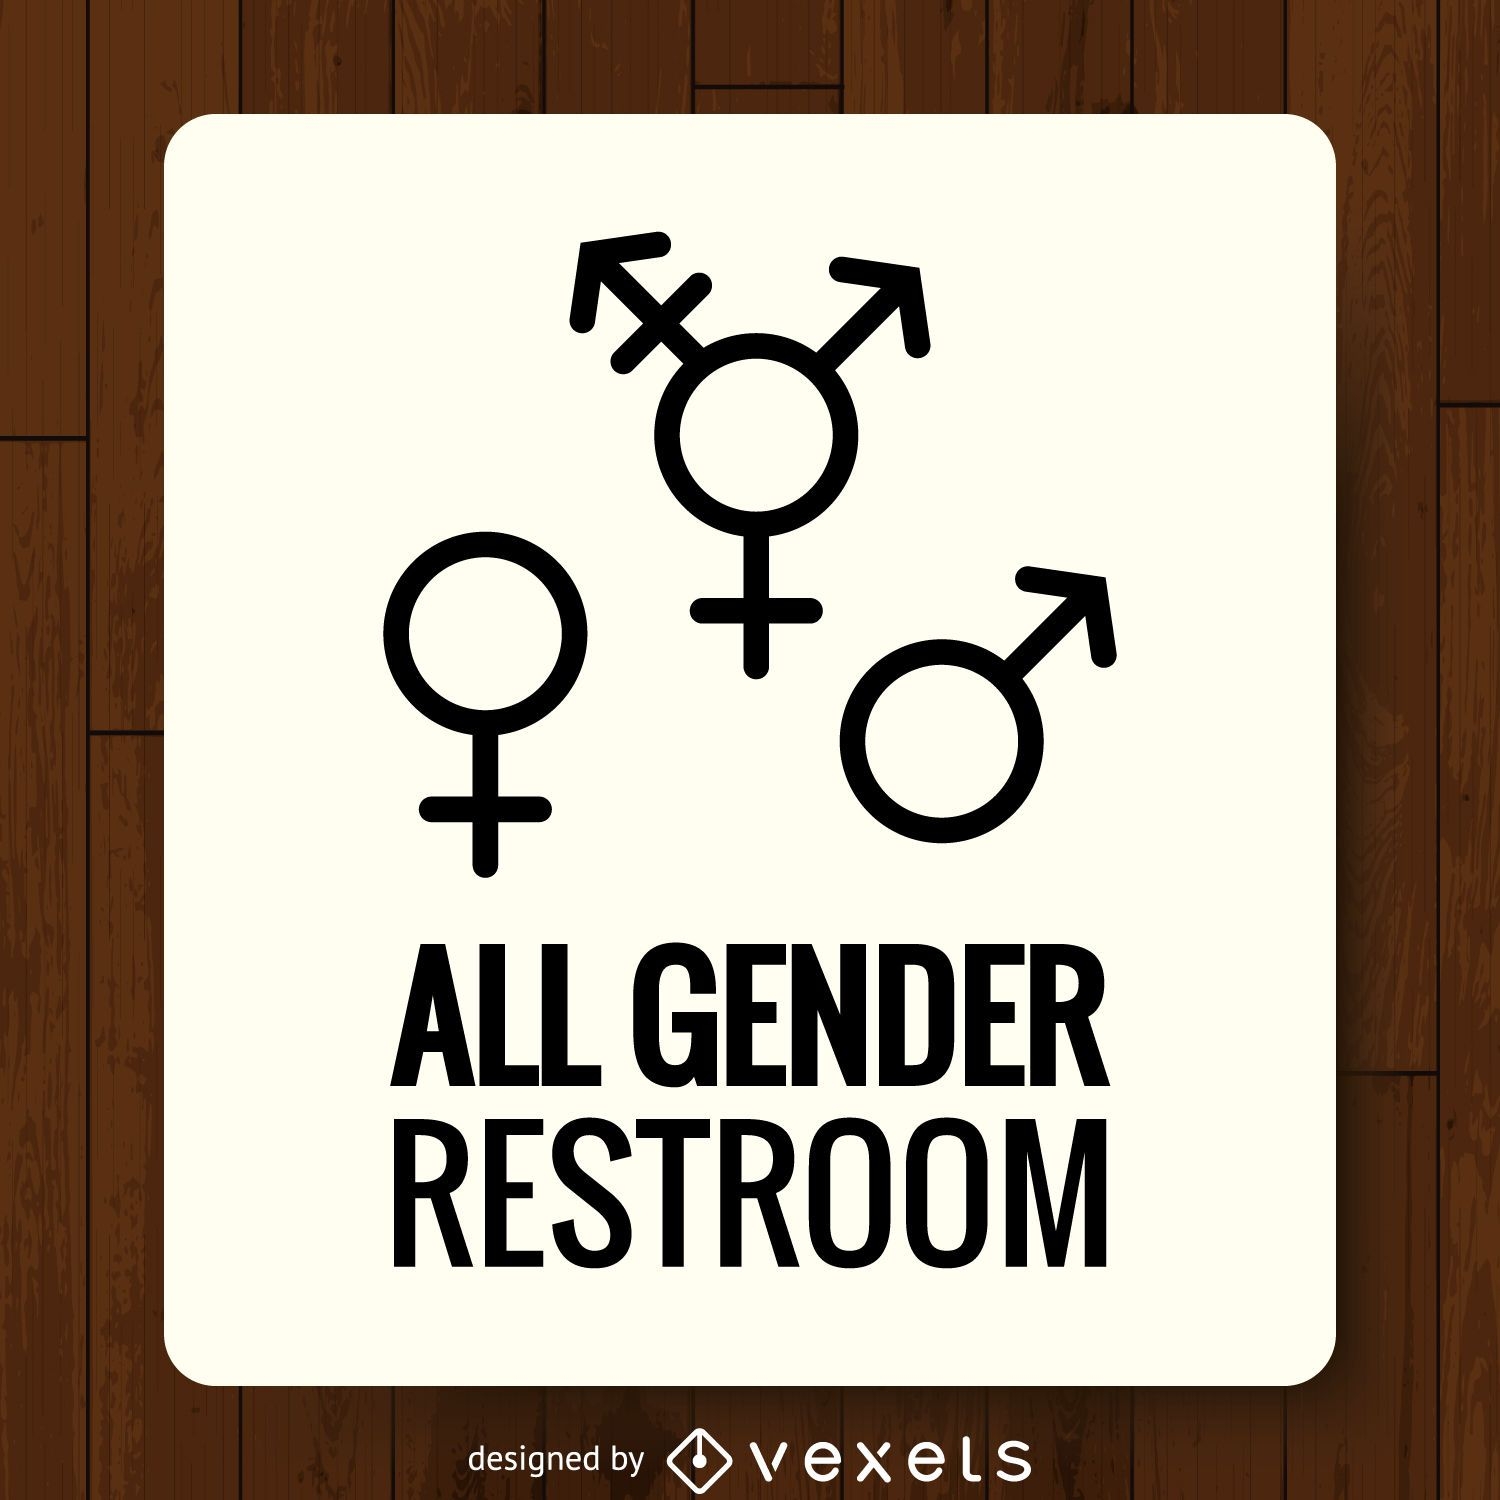 LGBT genders bathroom label